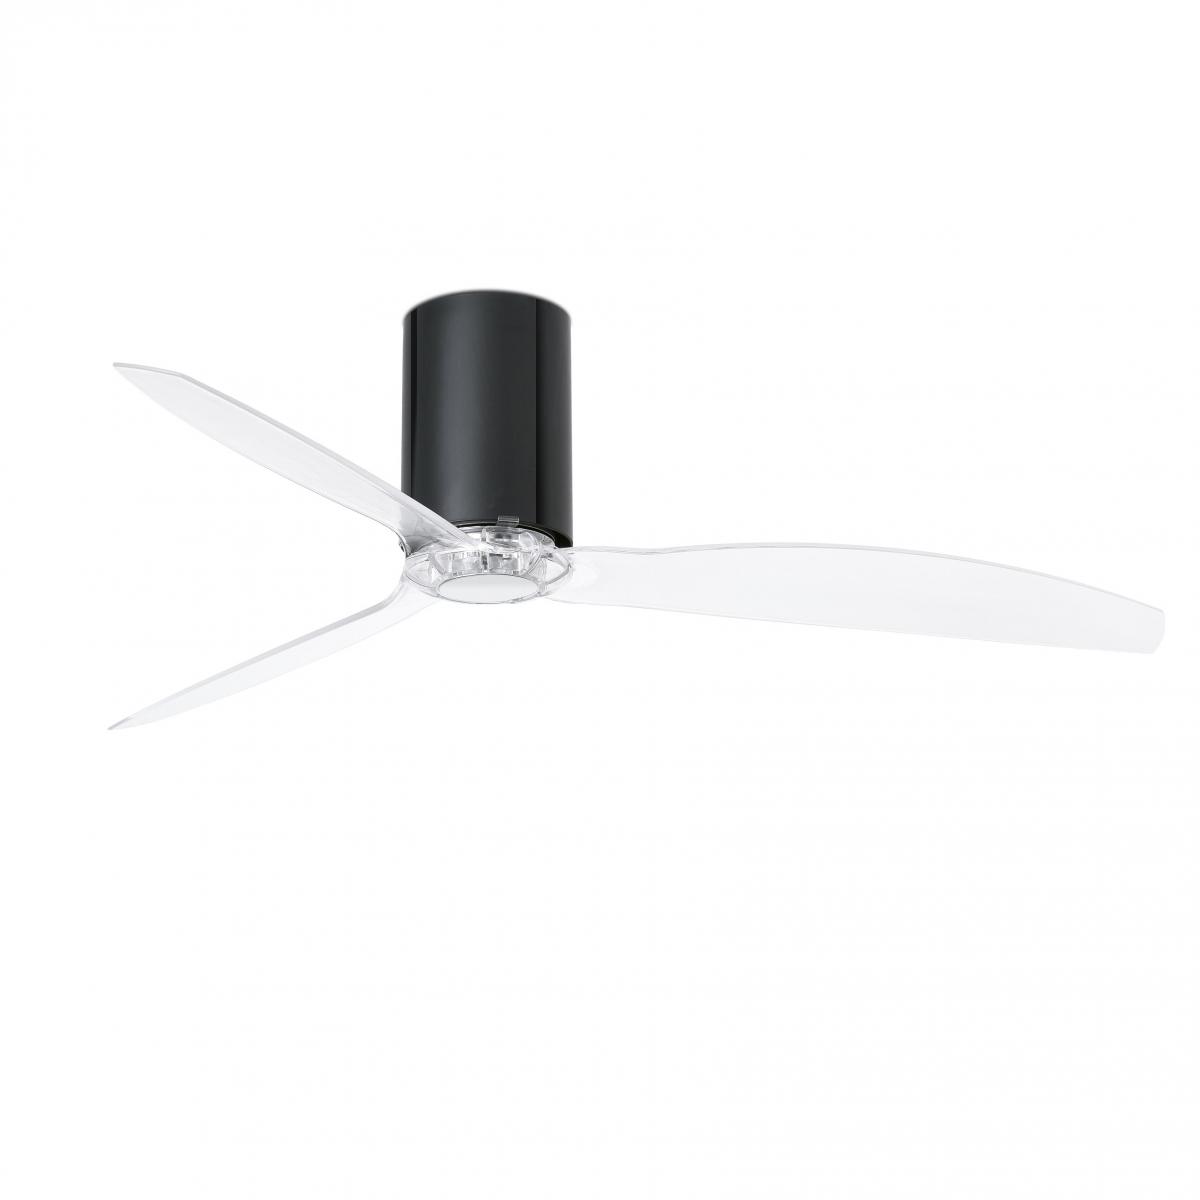 Глянцевый / прозрачный черный потолочный вентилятор Mini Tube Fan